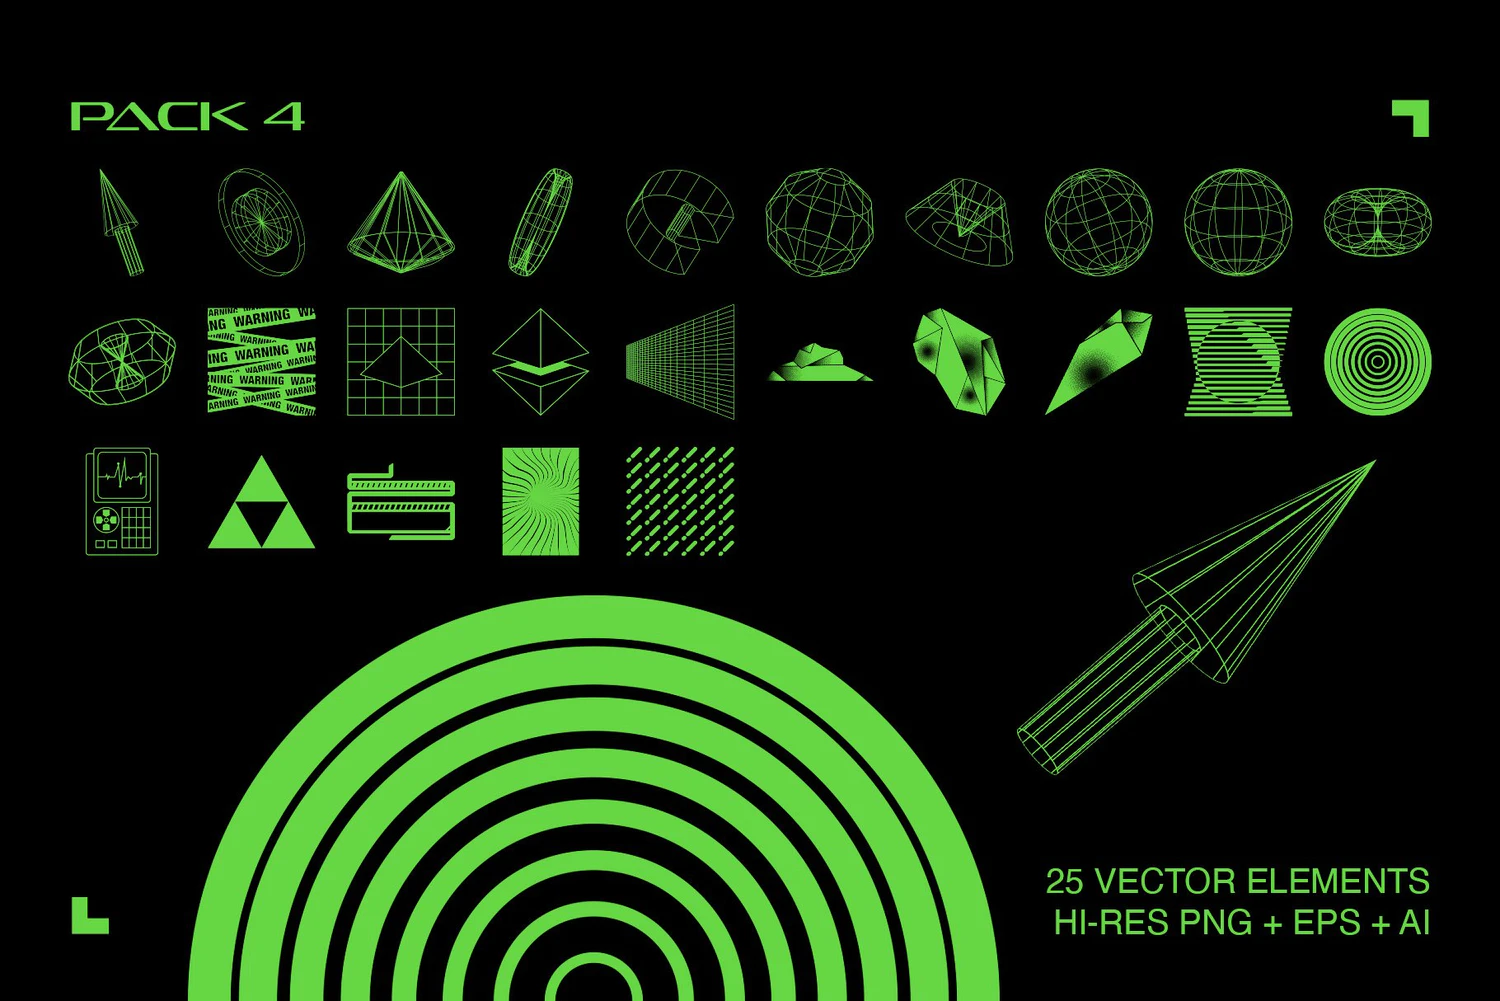 4310 175款未来科幻机能赛博朋克抽象艺术酸性几何图形图案ai设计素材 Retro Futuristic Elements@GOOODME.COM